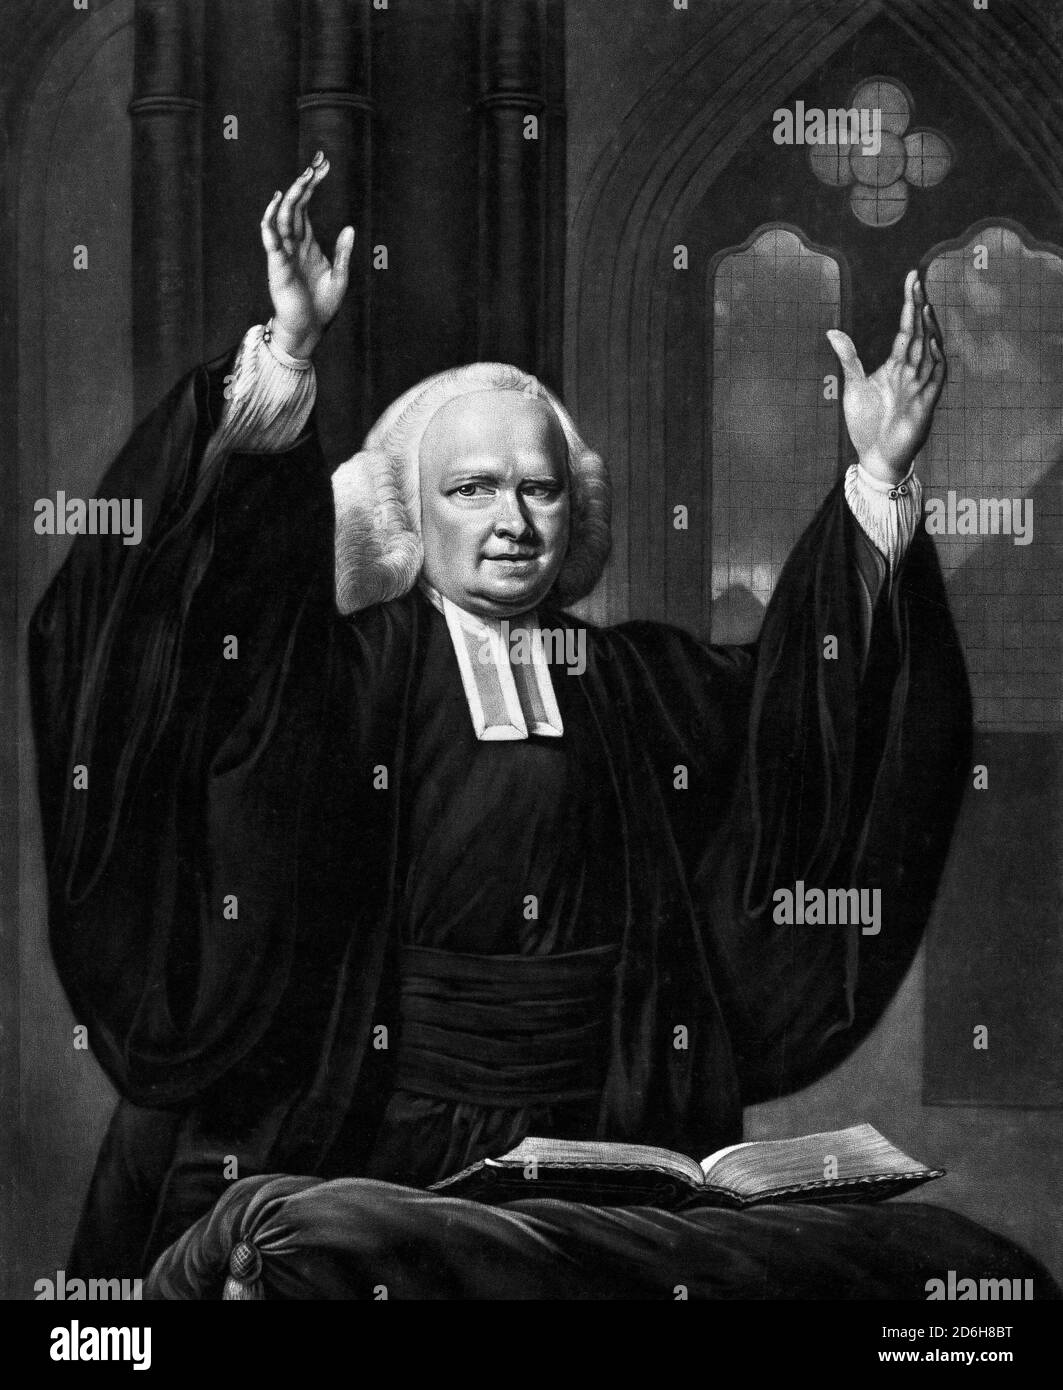 George Whitefield. Portrait du religieux anglican anglais, révérend George Whitefield (1714-1770) prêchant, imprimé par John Greenwood, d'après Nathaniel Hone, vers 1759-1770. Whitefield était l'un des fondateurs du méthodisme et du mouvement évangélique. Banque D'Images